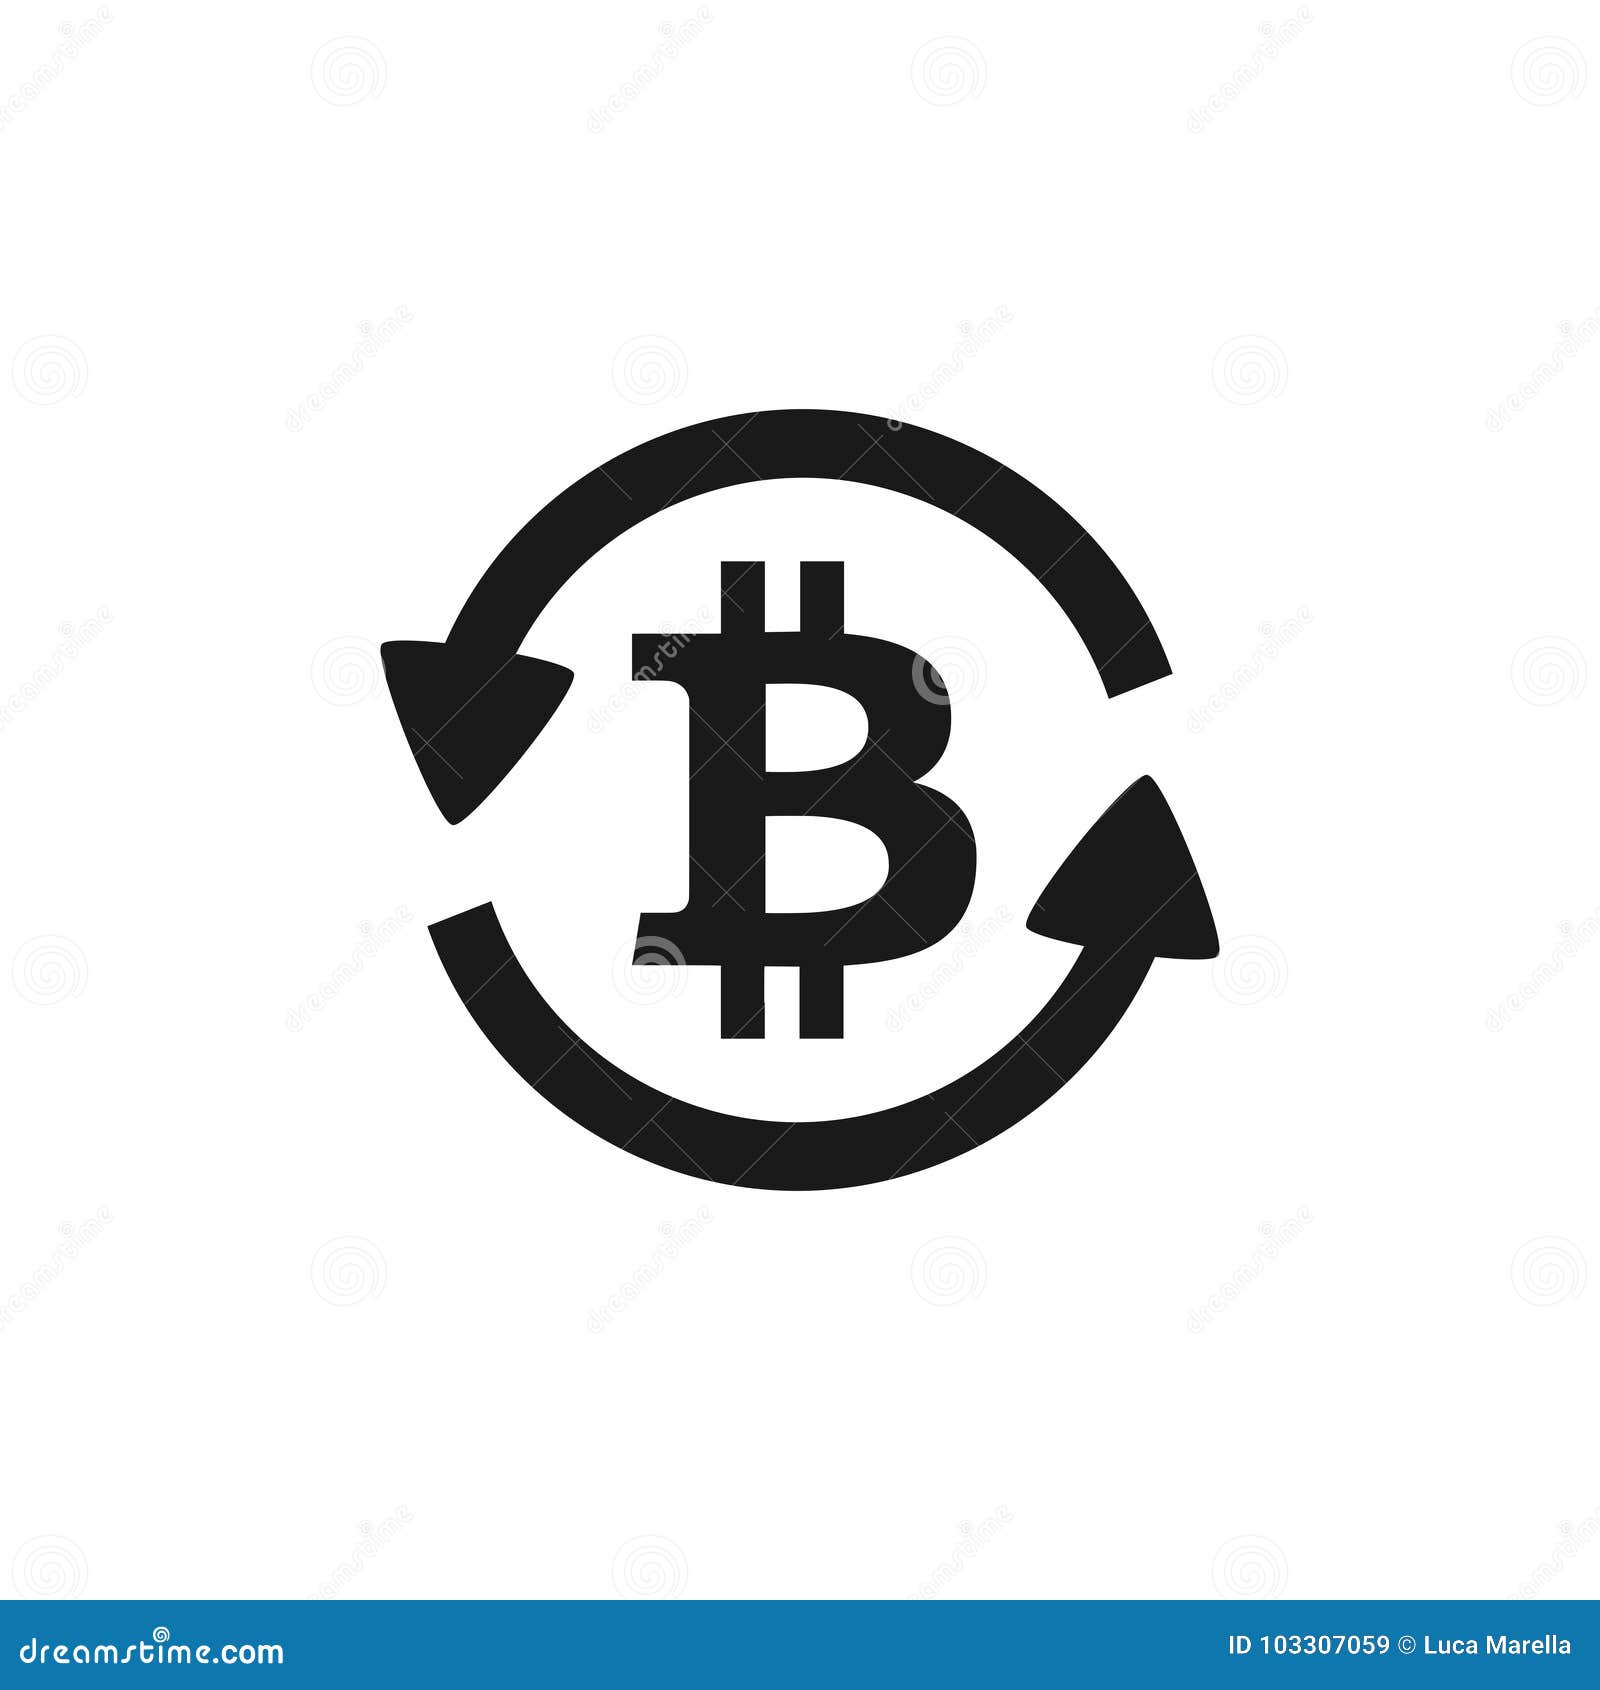 Обмен биткоин воронеж все банки who buys bitcoin when you sell